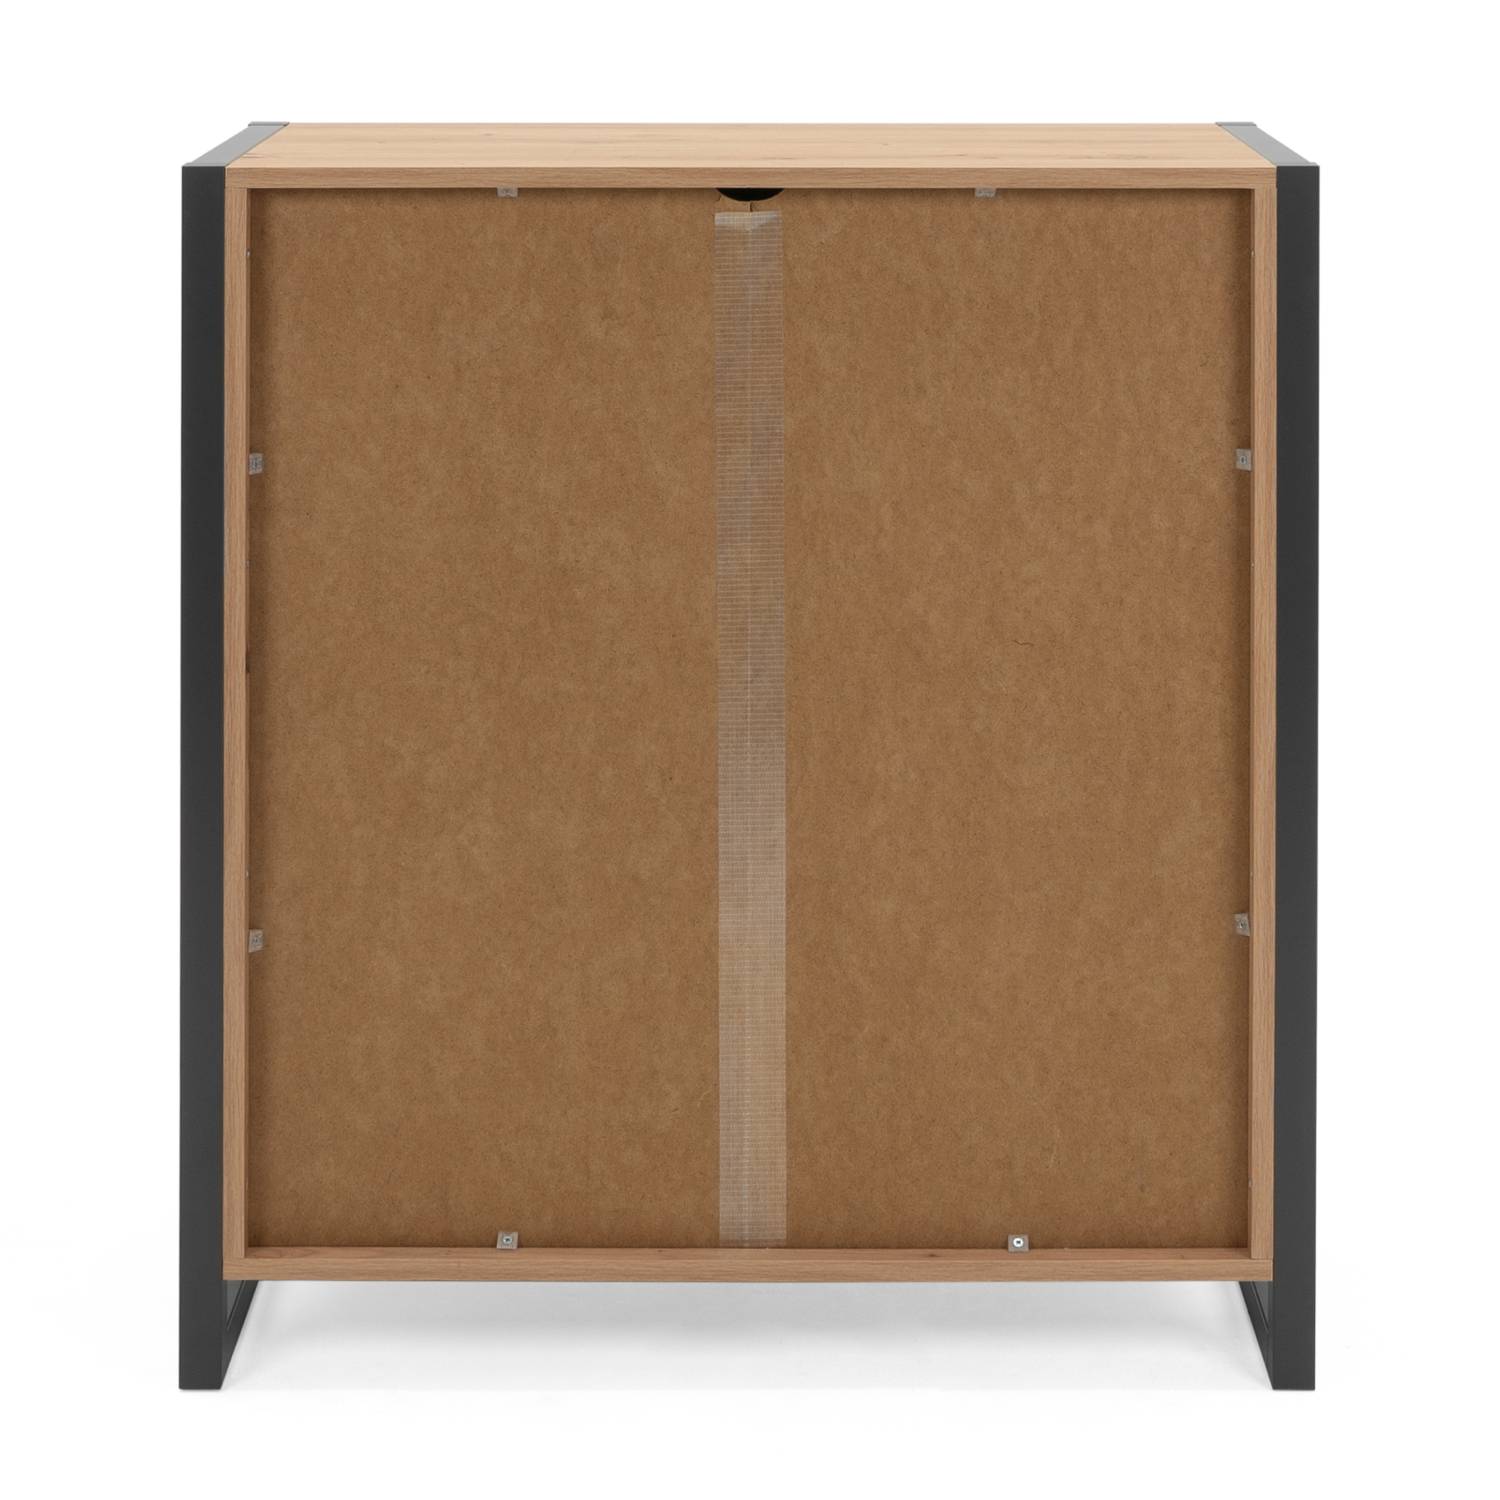 Sideboard Cupboard Storage Cabinet Wood Oak Living Room Industrial Look